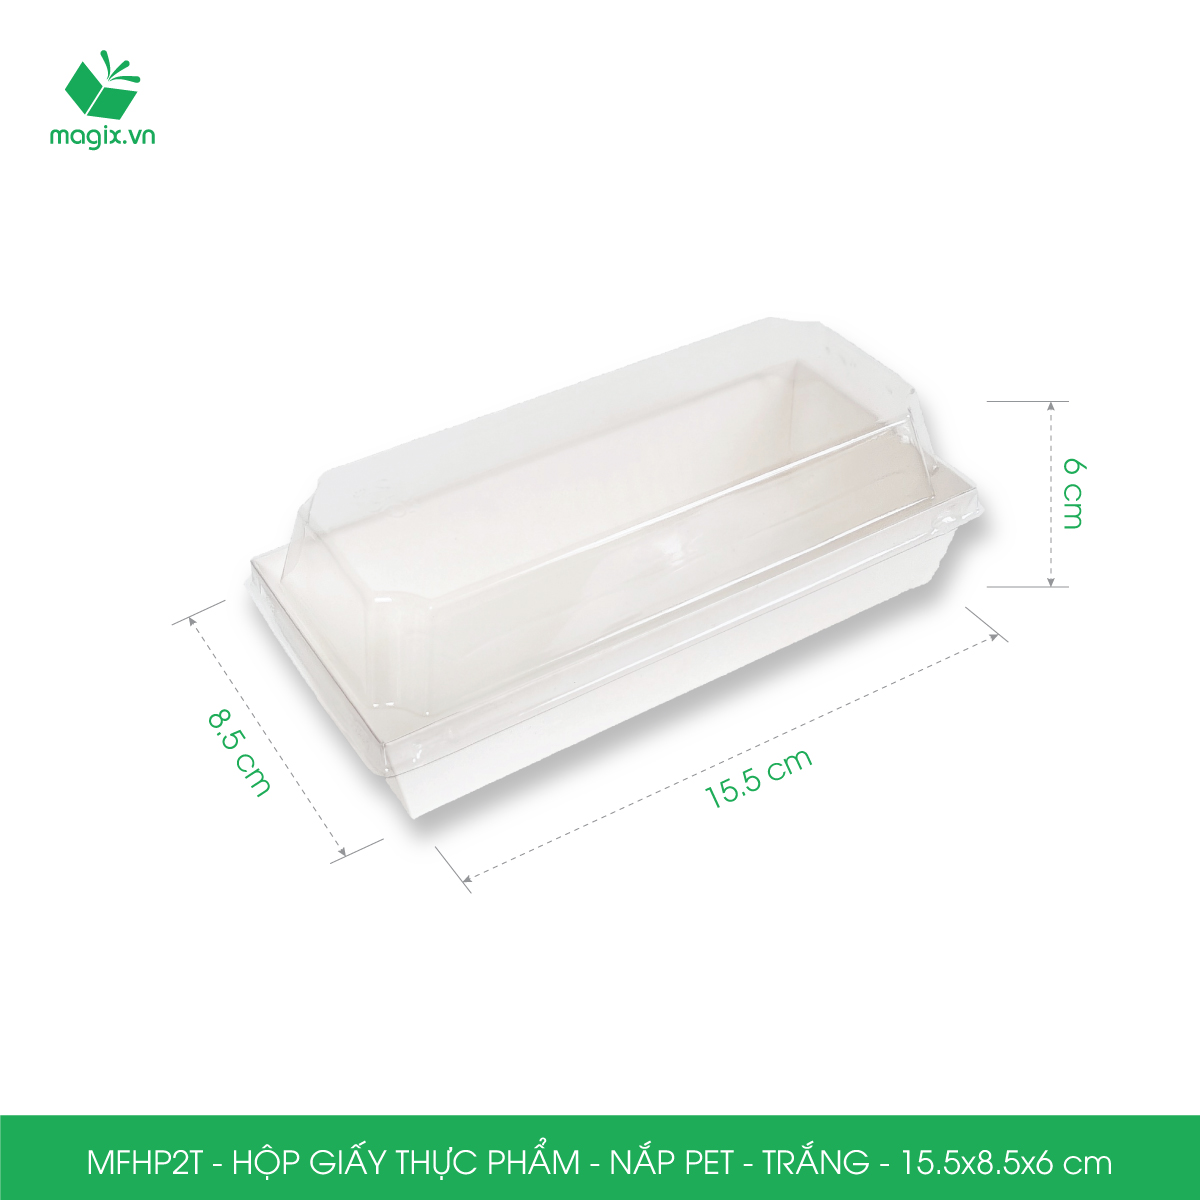 MFHP2T - 15.5x8.5x6 cm - 100 hộp giấy thực phẩm màu trắng nắp Pet, hộp giấy chữ nhật đựng thức ăn, hộp bánh nắp trong